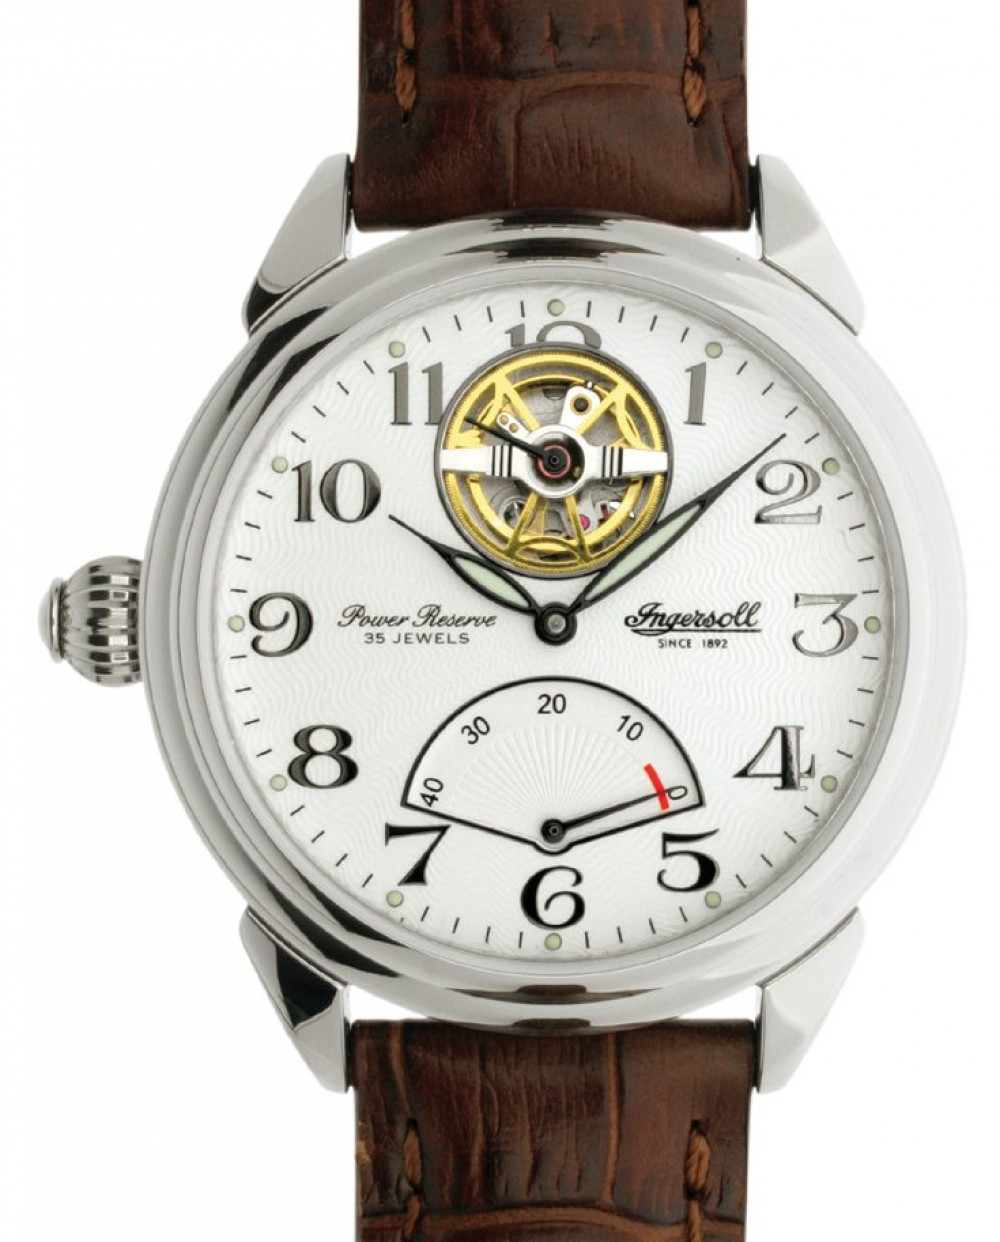 Zegarek firmy Ingersoll, model Desperado